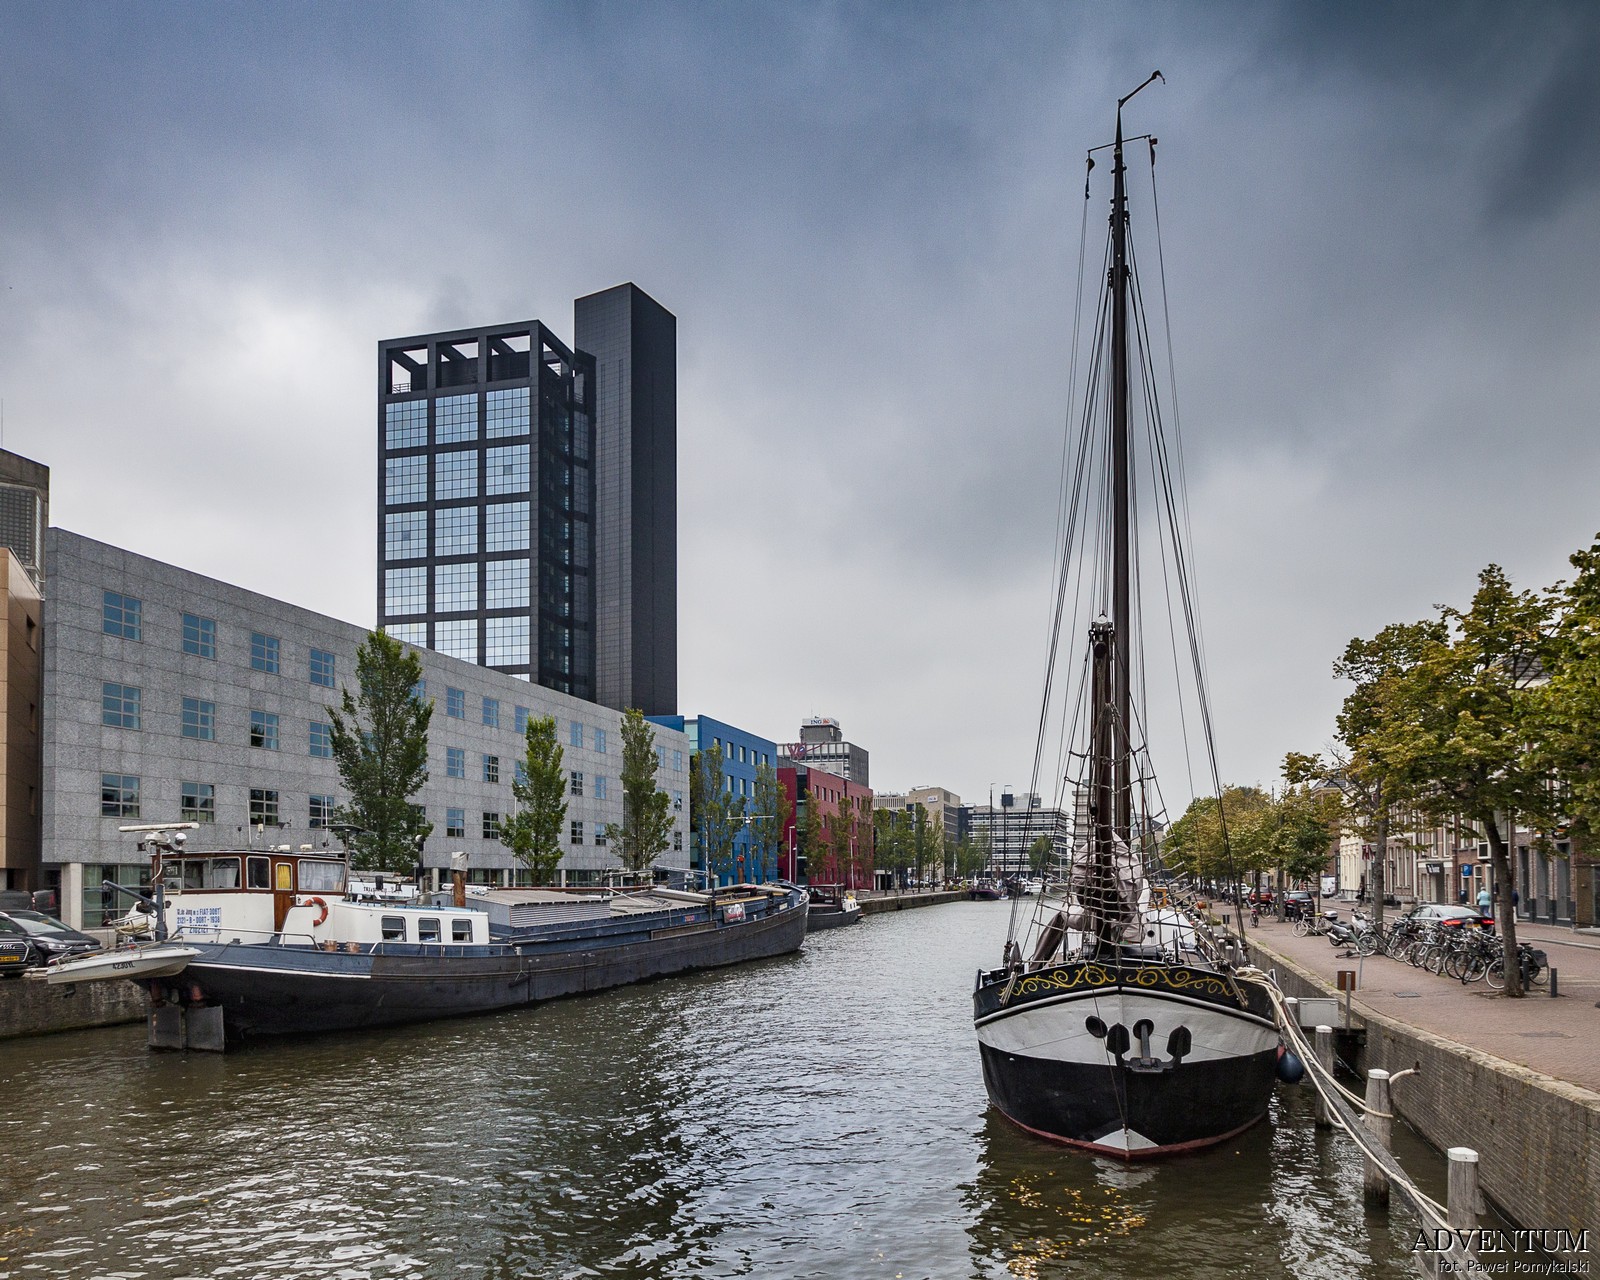 Holandia Leeuwarden Atrakcje Zwiedzanie co Zobaczyć Amsterdam Rotterdam Haga Kanały Wiatraki